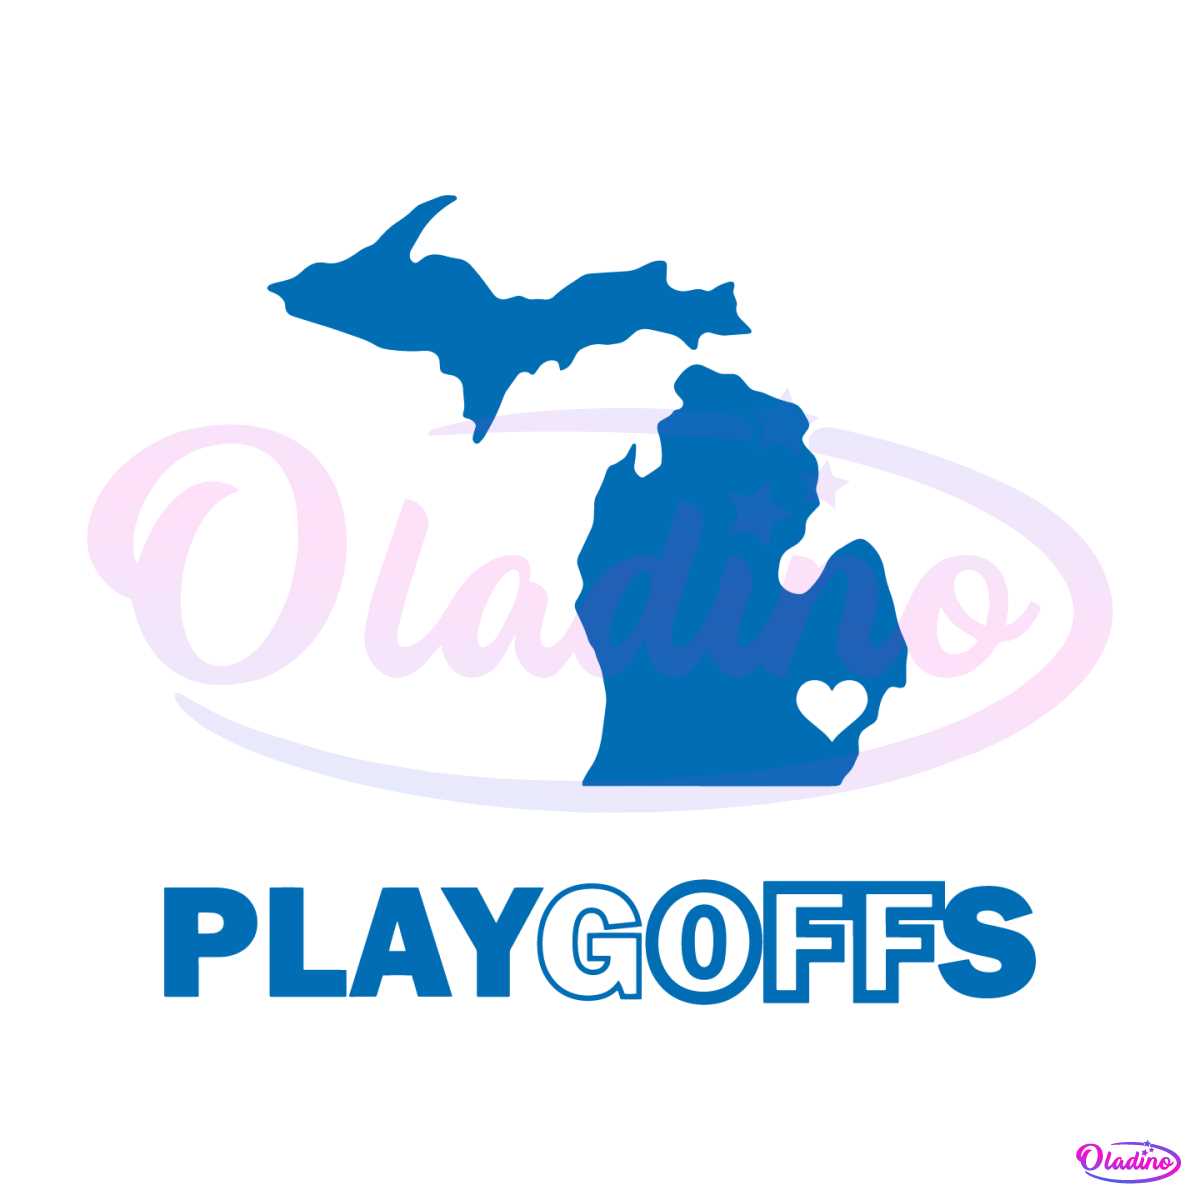 playgoffs-detroit-lions-playoffs-jared-goff-svg